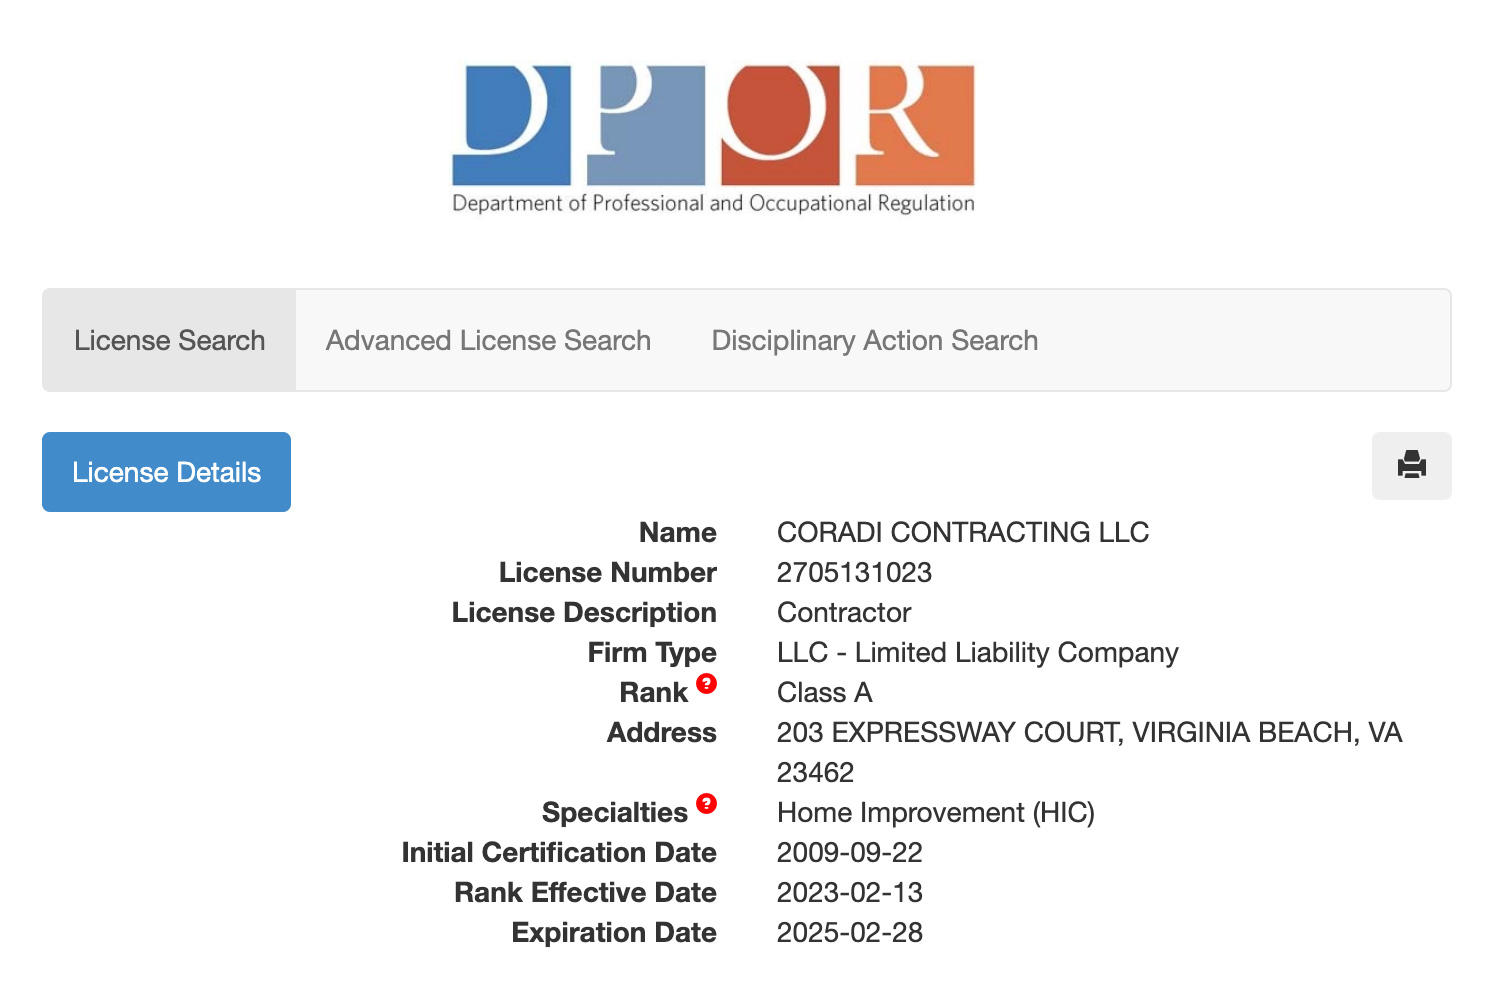 DPOR website contractor license